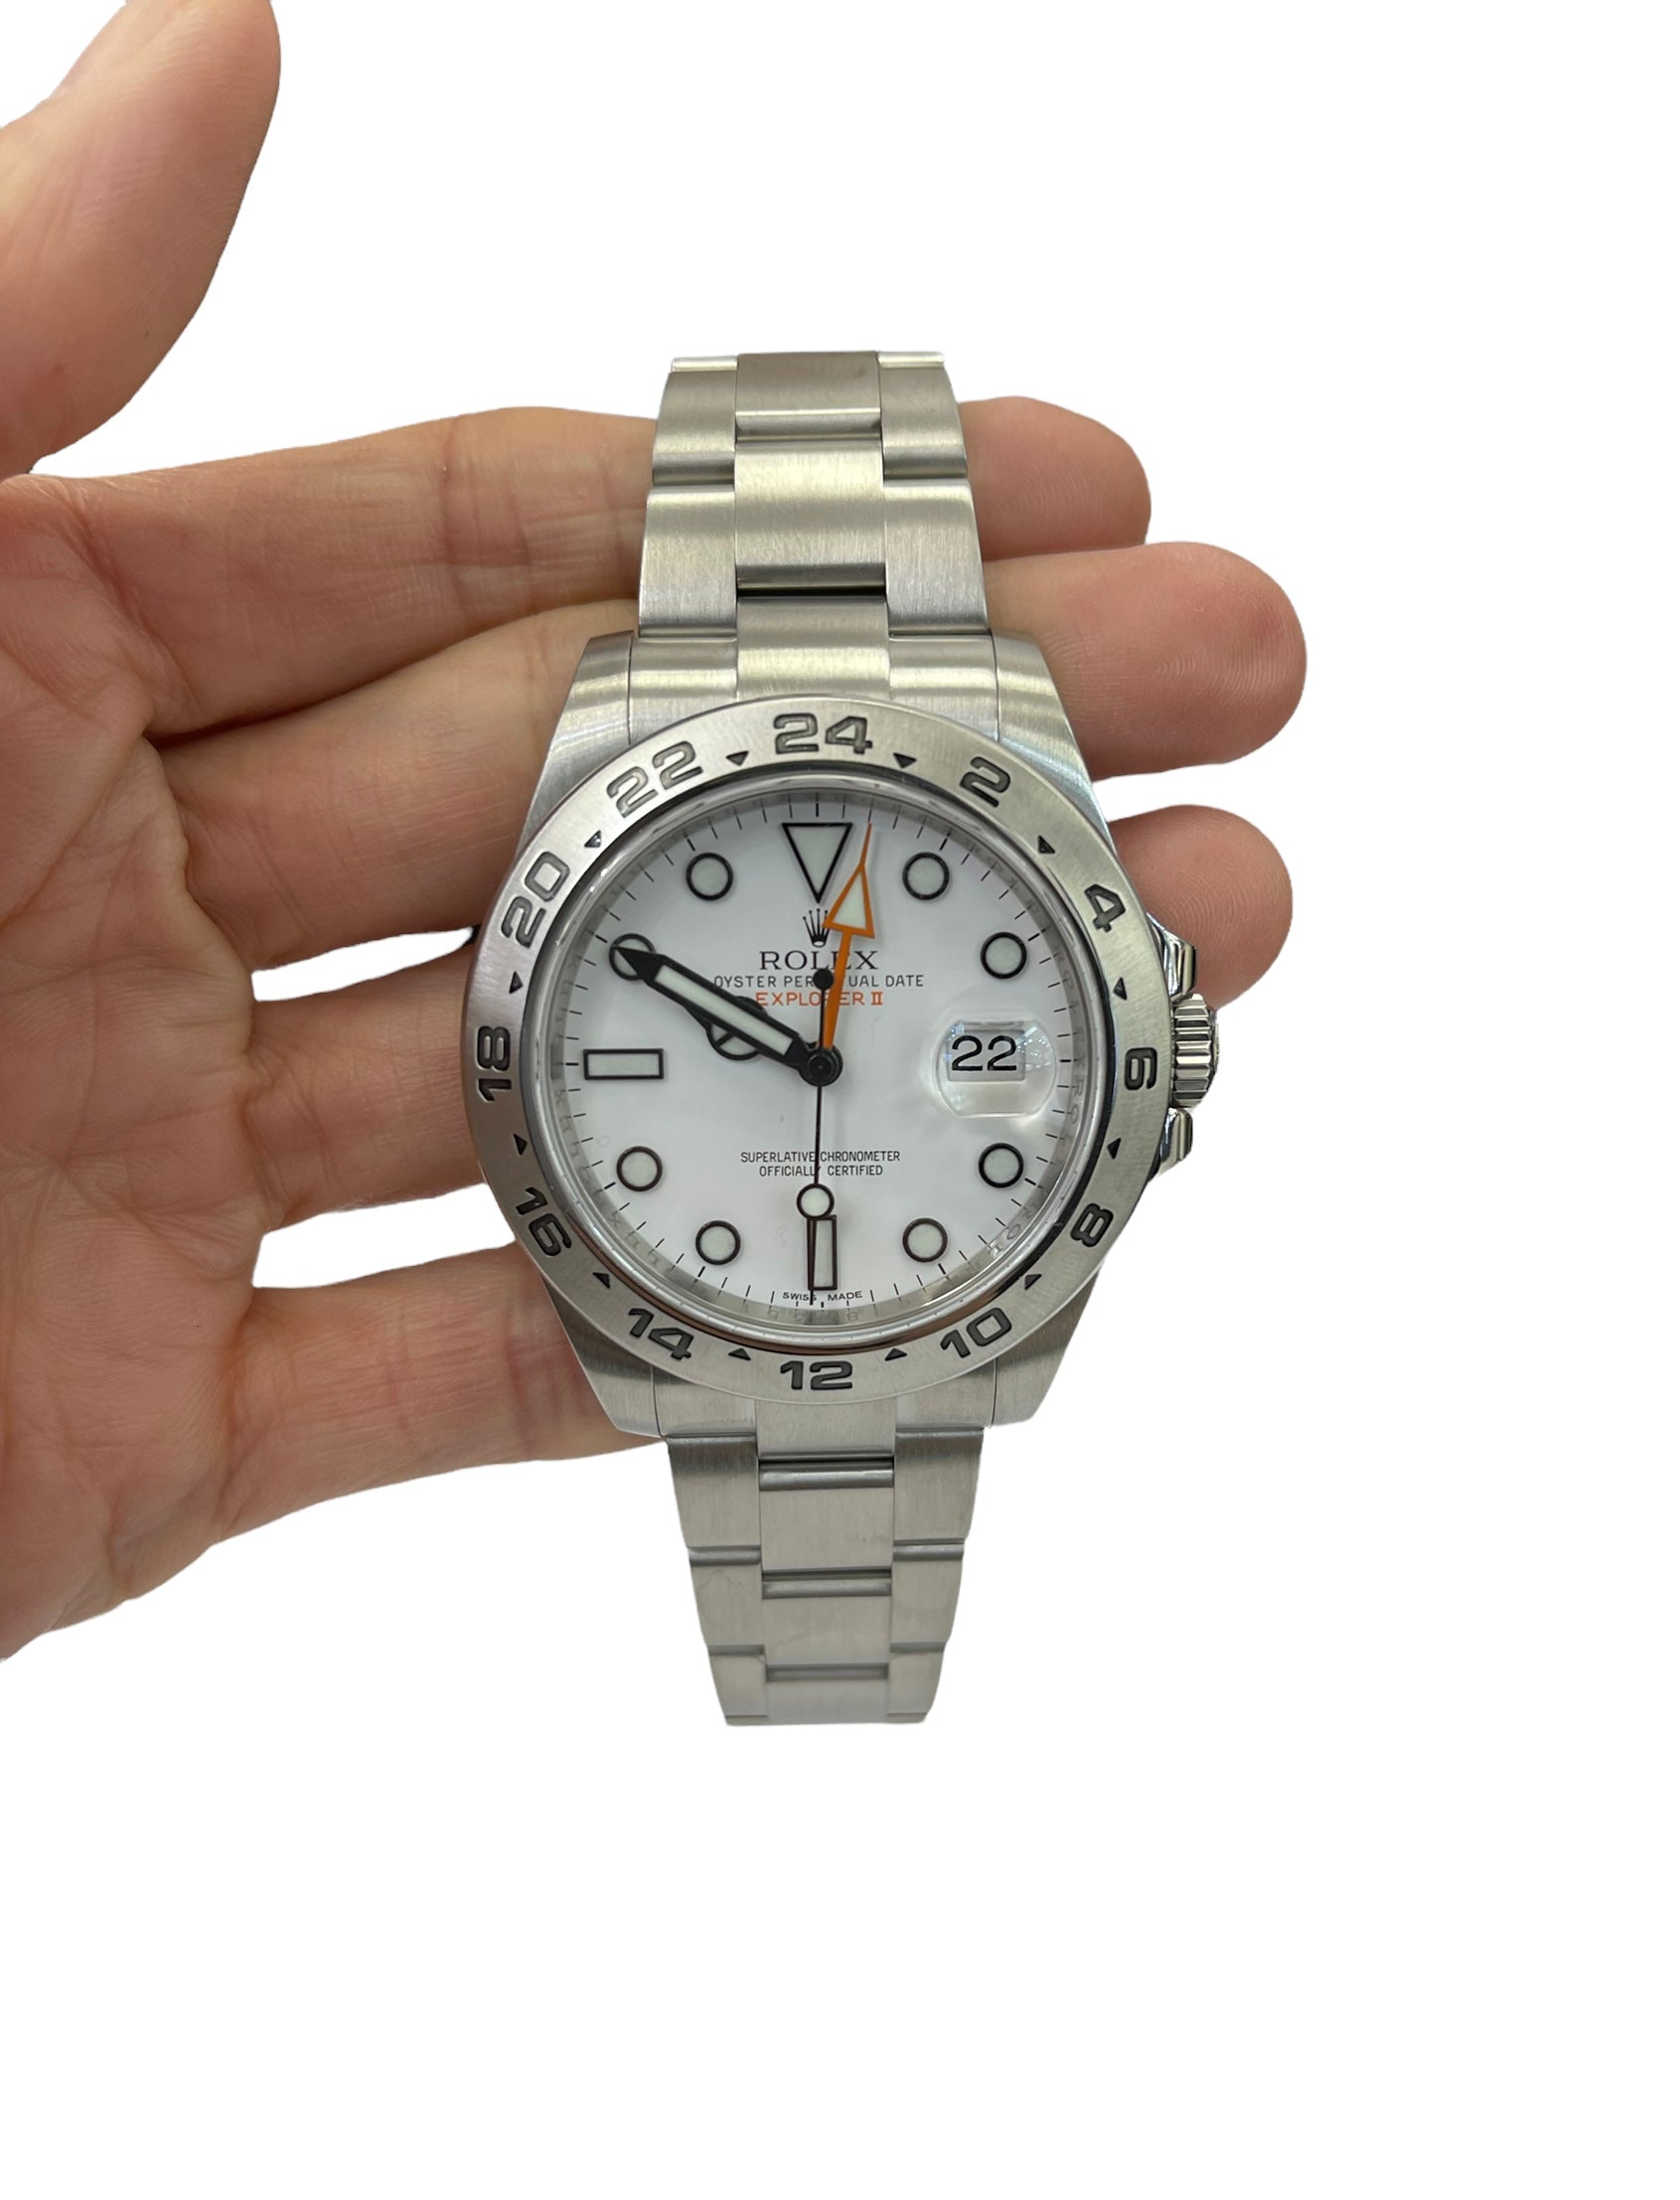 Rolex 42MM Polar Explorer II Stainless Watch Ref # 216570 Bezel Engraved